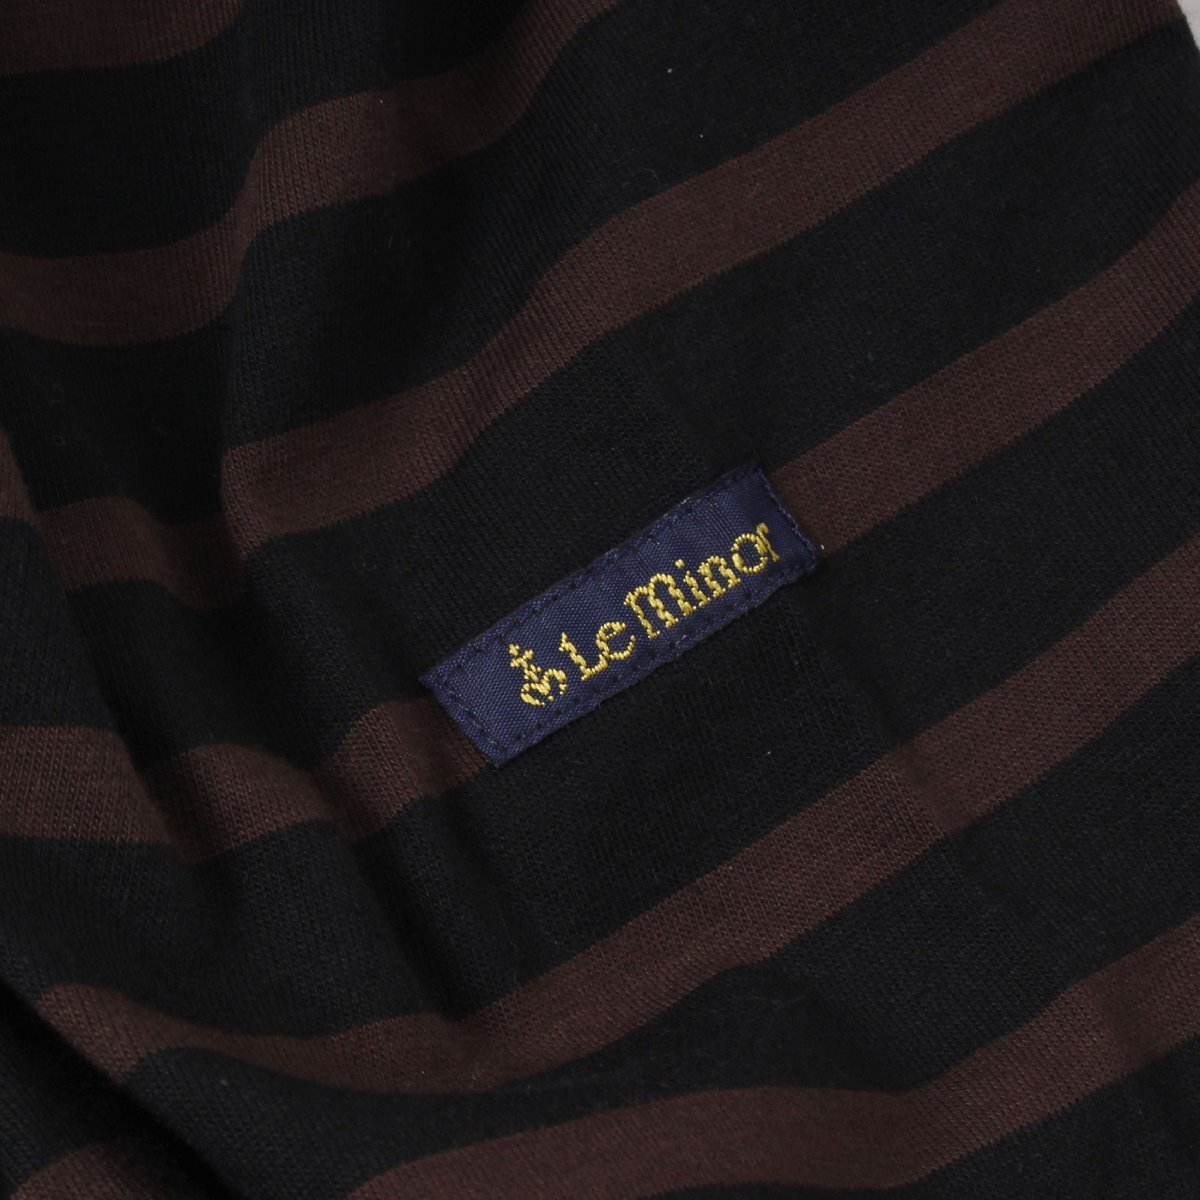 【タグ付き・新品】Le minor MARINIERE BATEAU 定価14,300円 size1(S) BLACK/PEPITE Tシャツ ボーダー カットソー ルミノア_画像6